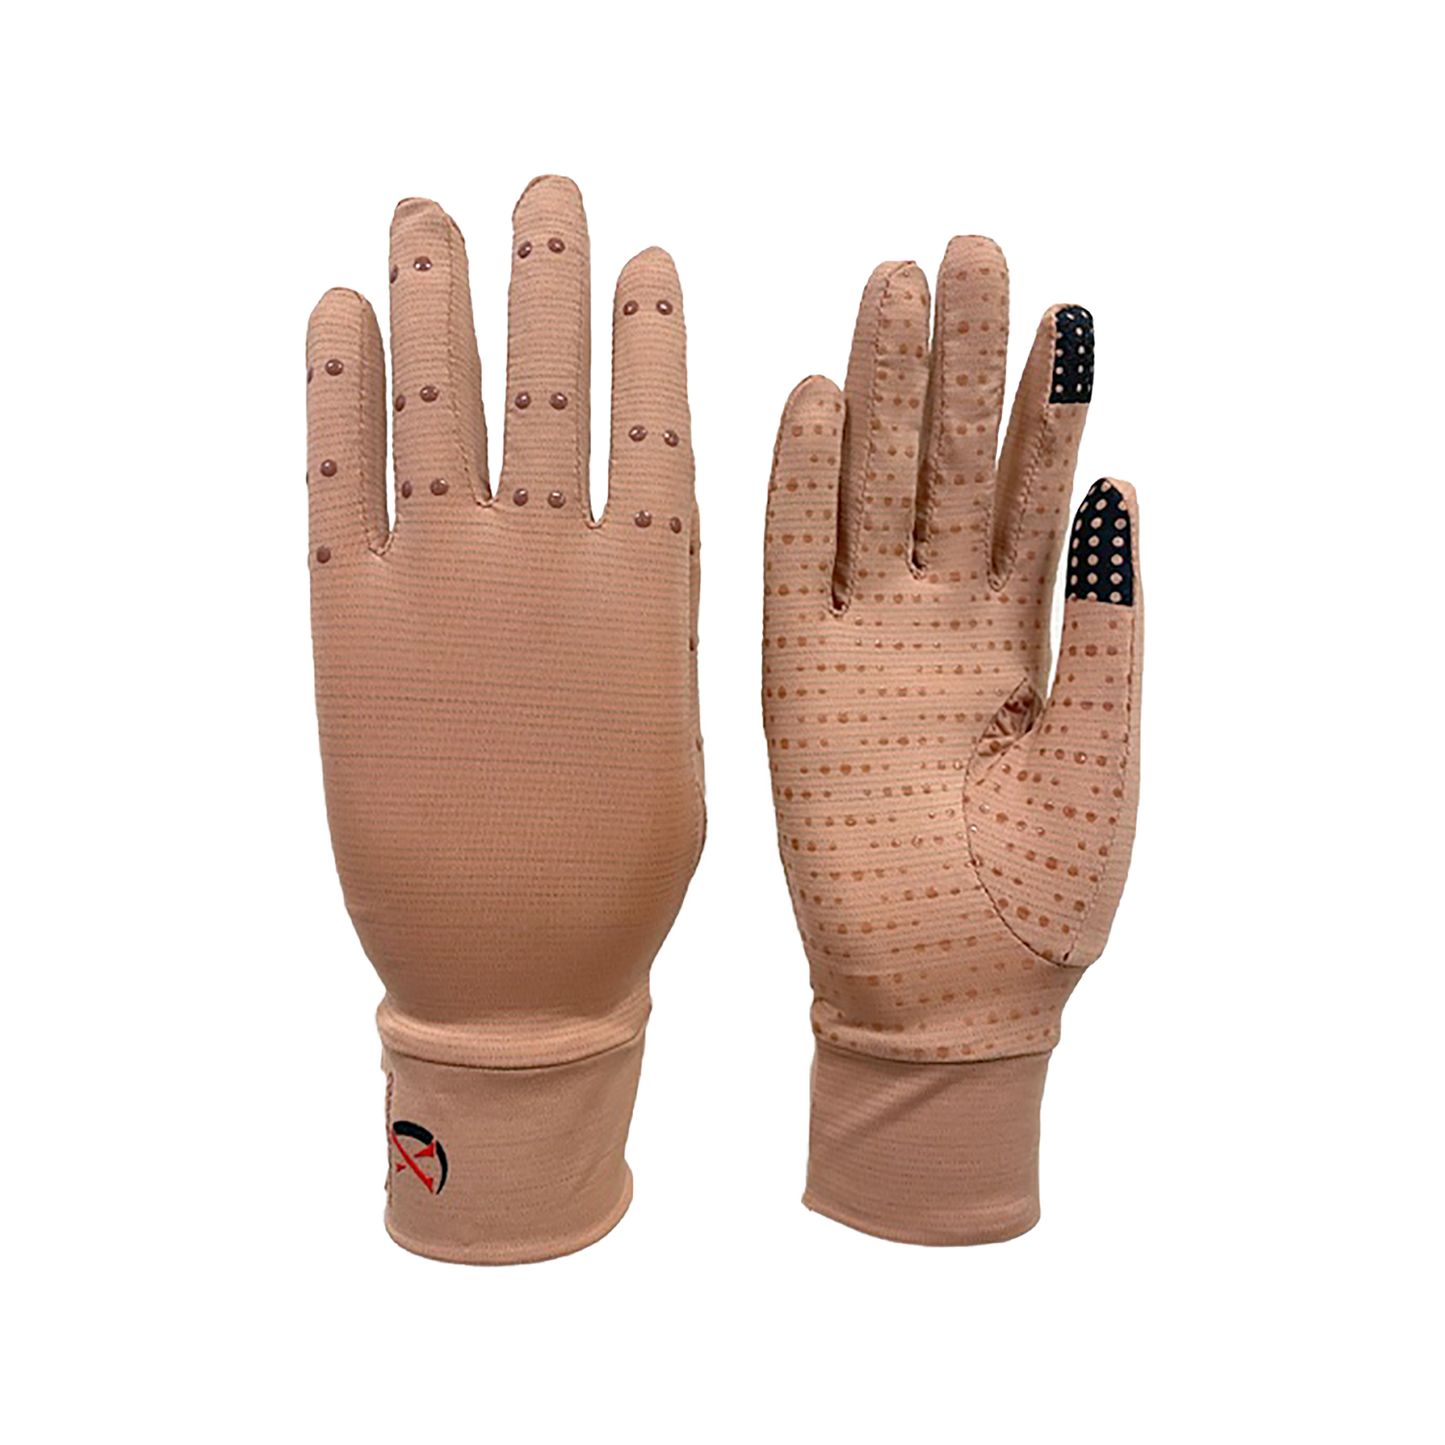 XEIR PRO Men Copper Compression Arthritis Gloves